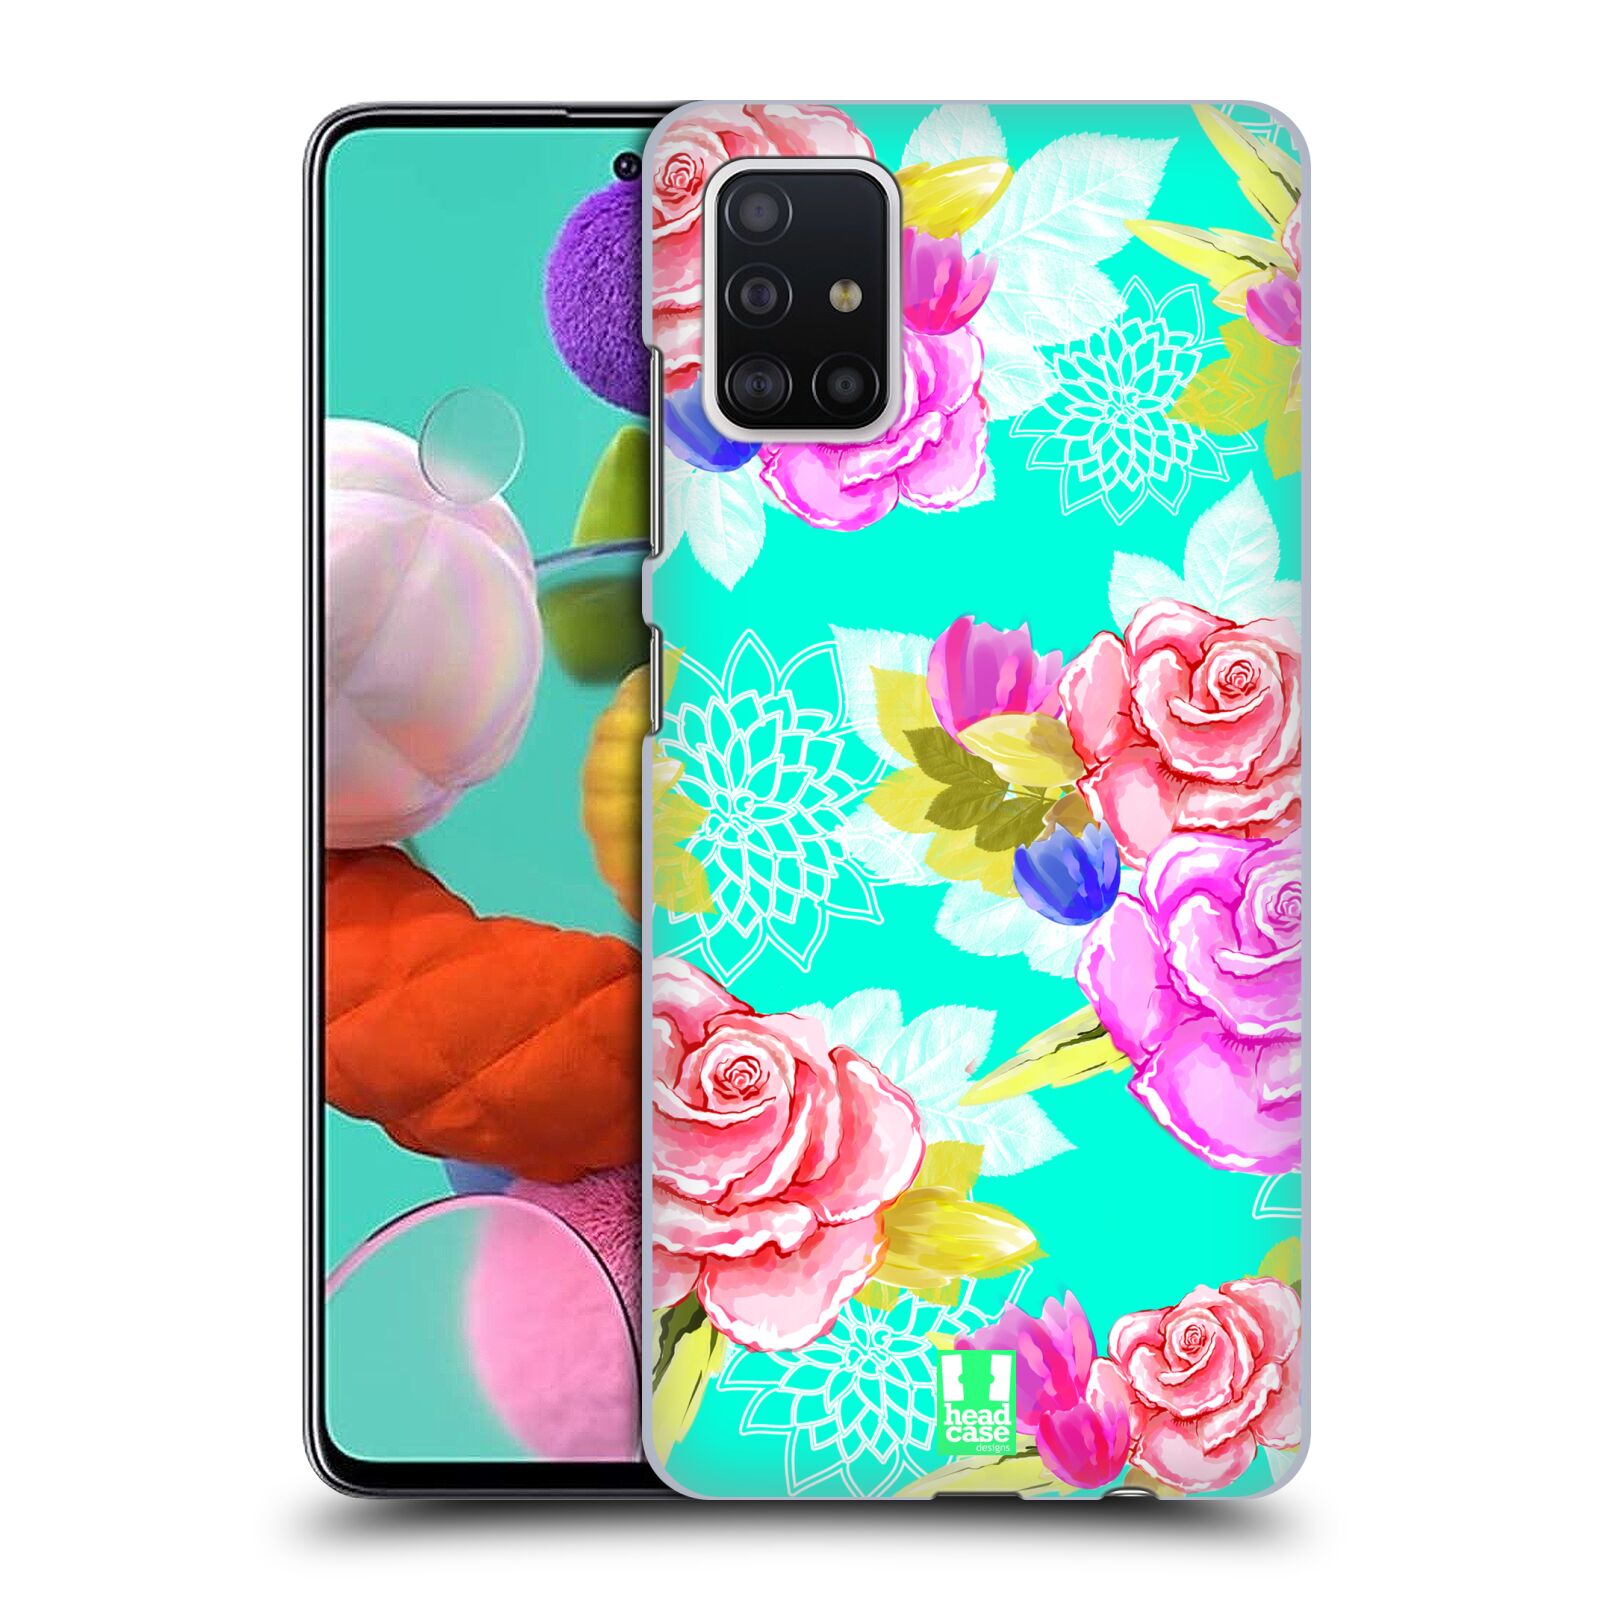 Pouzdro na mobil Samsung Galaxy A51 - HEAD CASE - vzor Malované květiny barevné AQUA MODRÁ